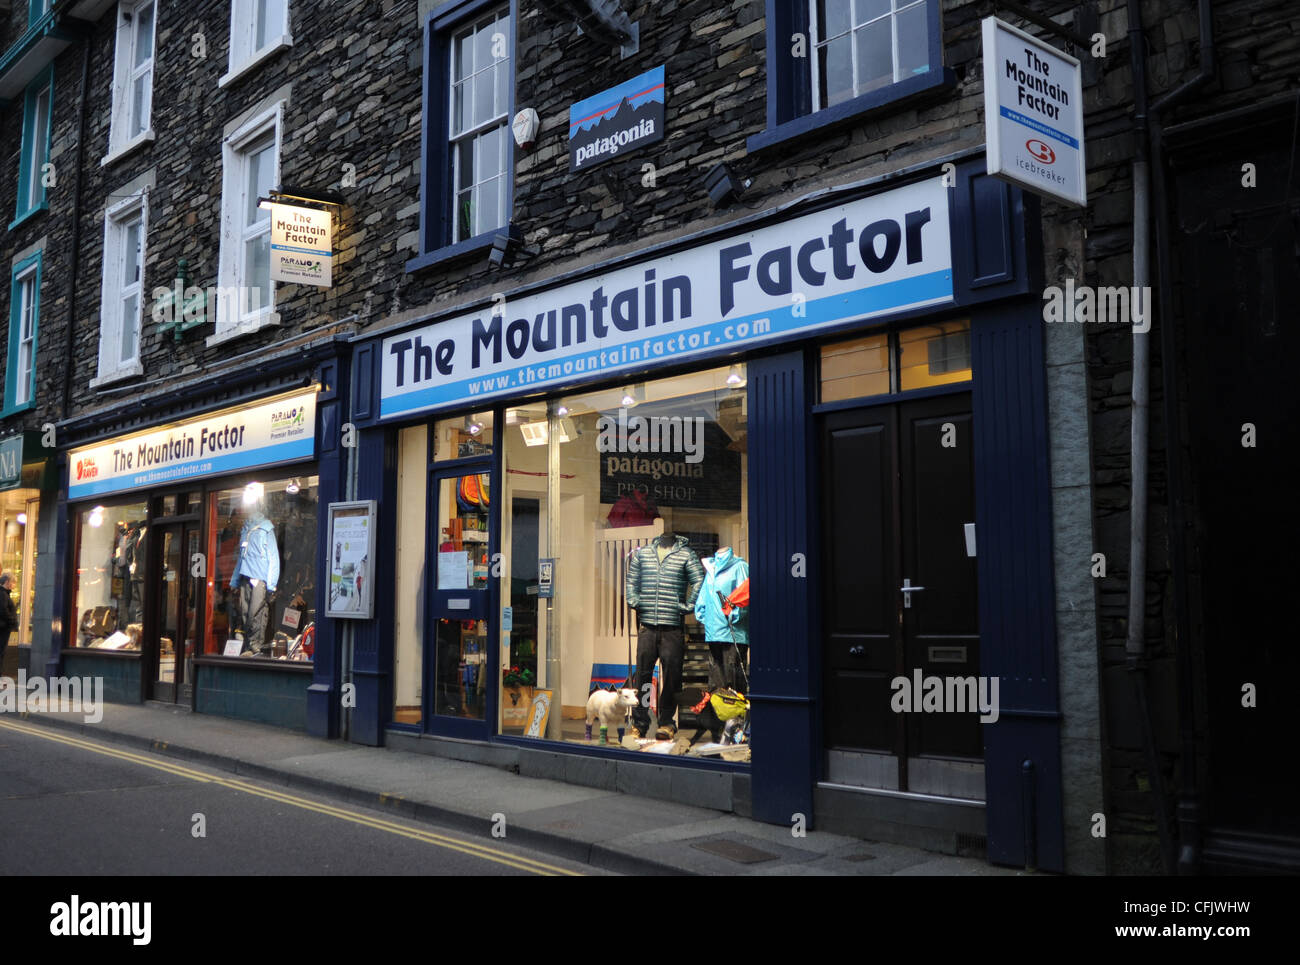 El factor de la montaña tienda de ropa de aventura al aire libre en Ambleside, en el distrito de Los Lagos de Cumbria Reino Unido Foto de stock